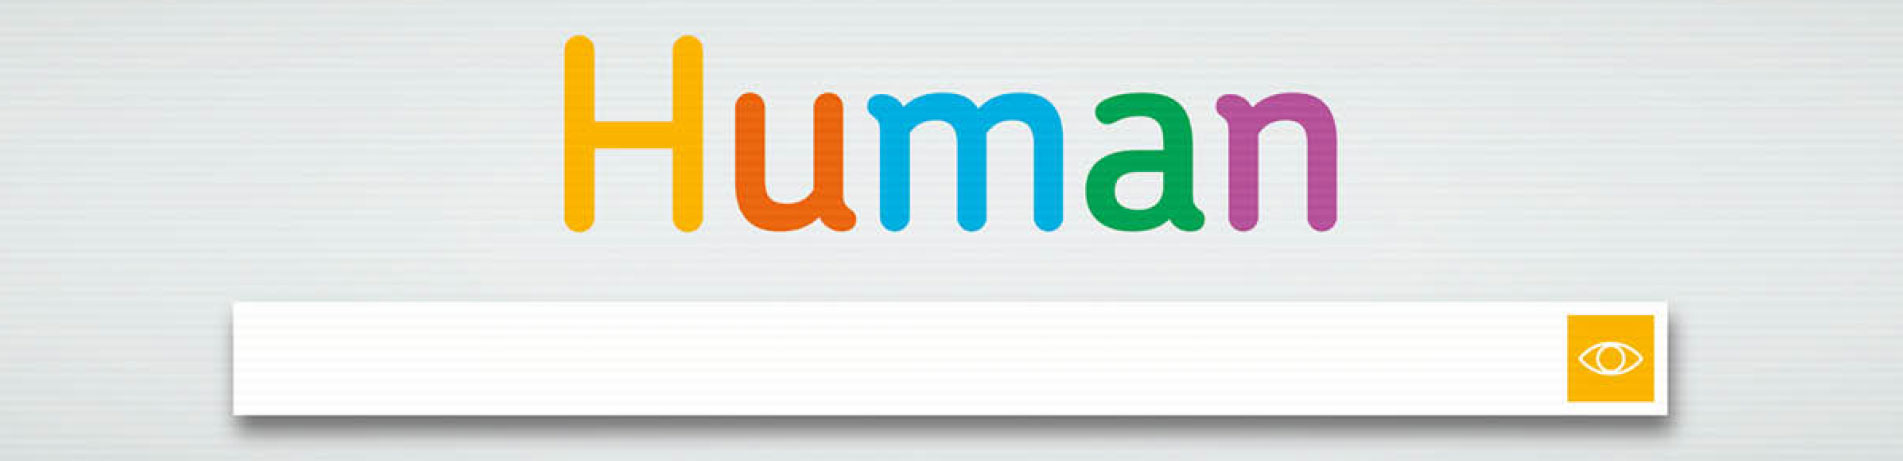 Human logo and searchbar